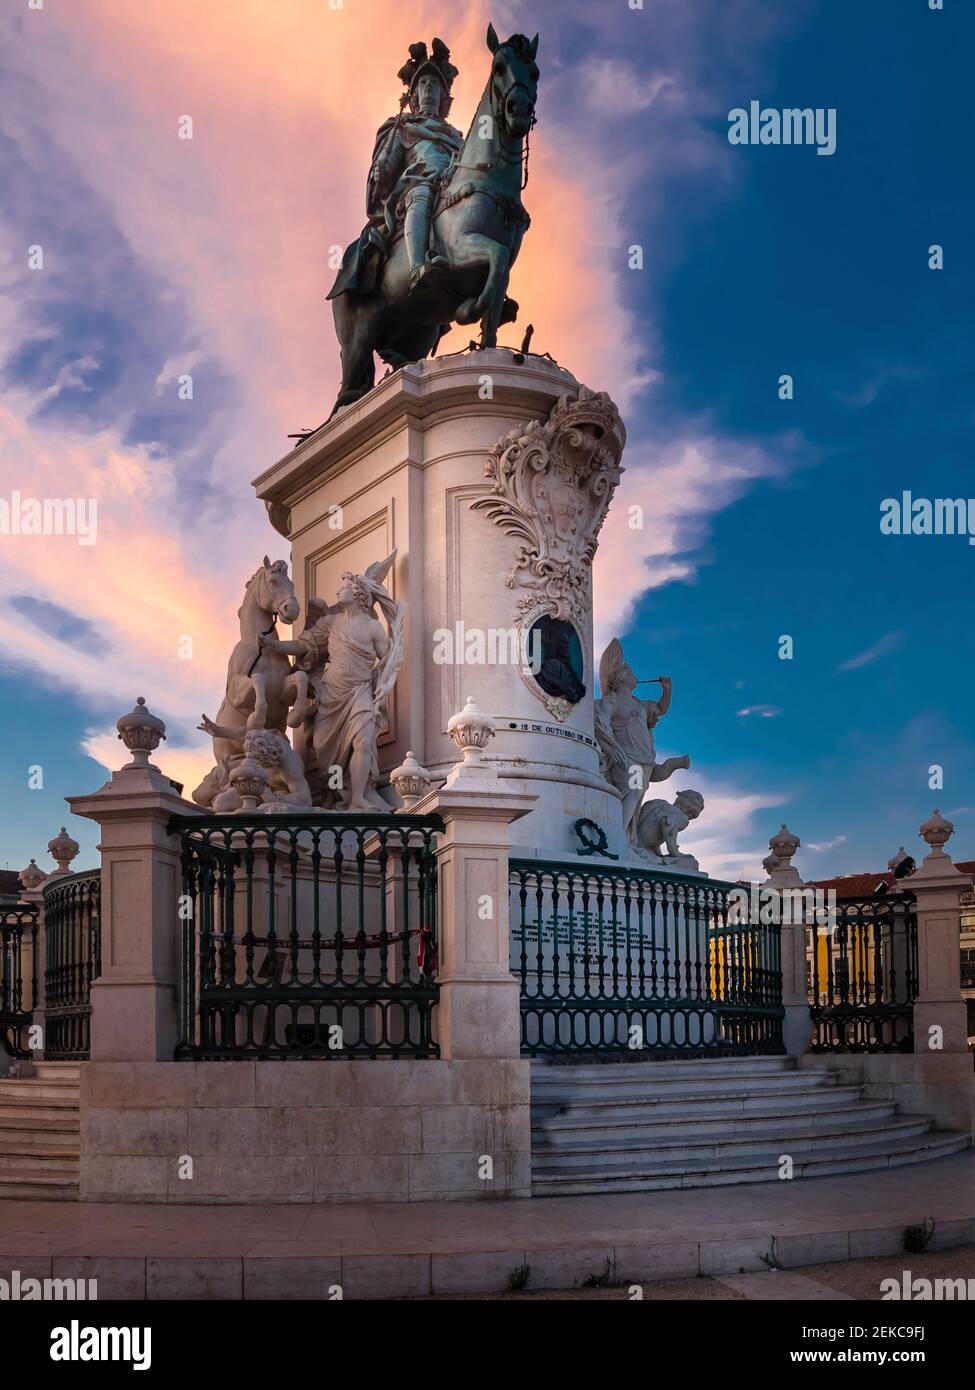 Portugal, province d'Estrémadure, Lisbonne, statue équestre du roi José I au crépuscule Banque D'Images